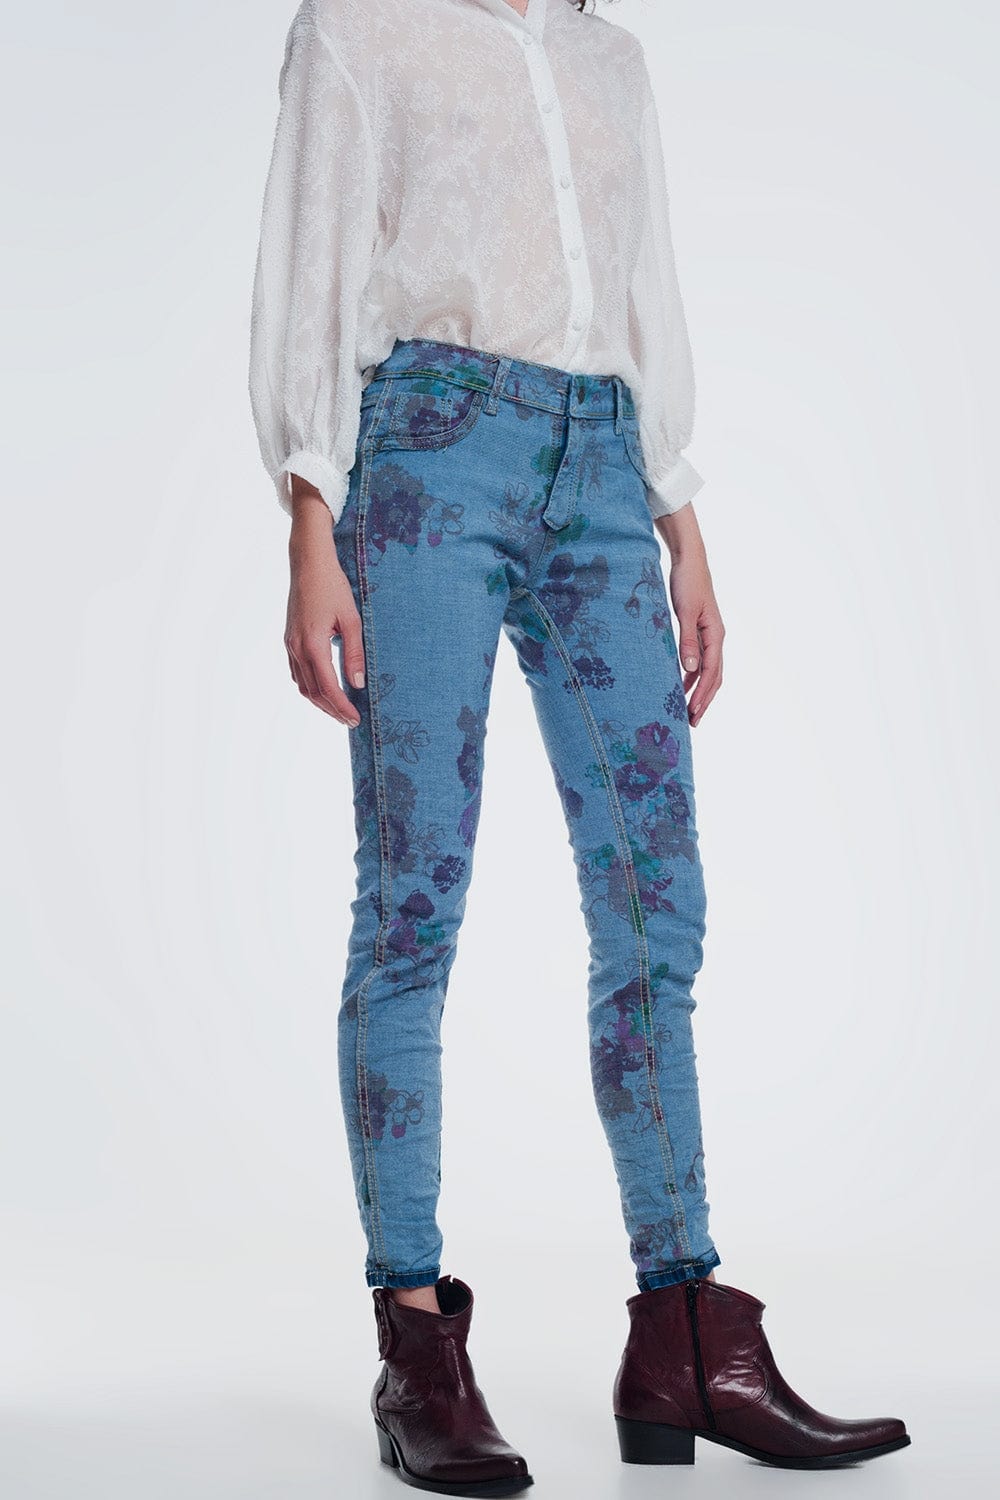 Q2 Women's Jean Reversible Wrinkled Denim Skinny Jeans